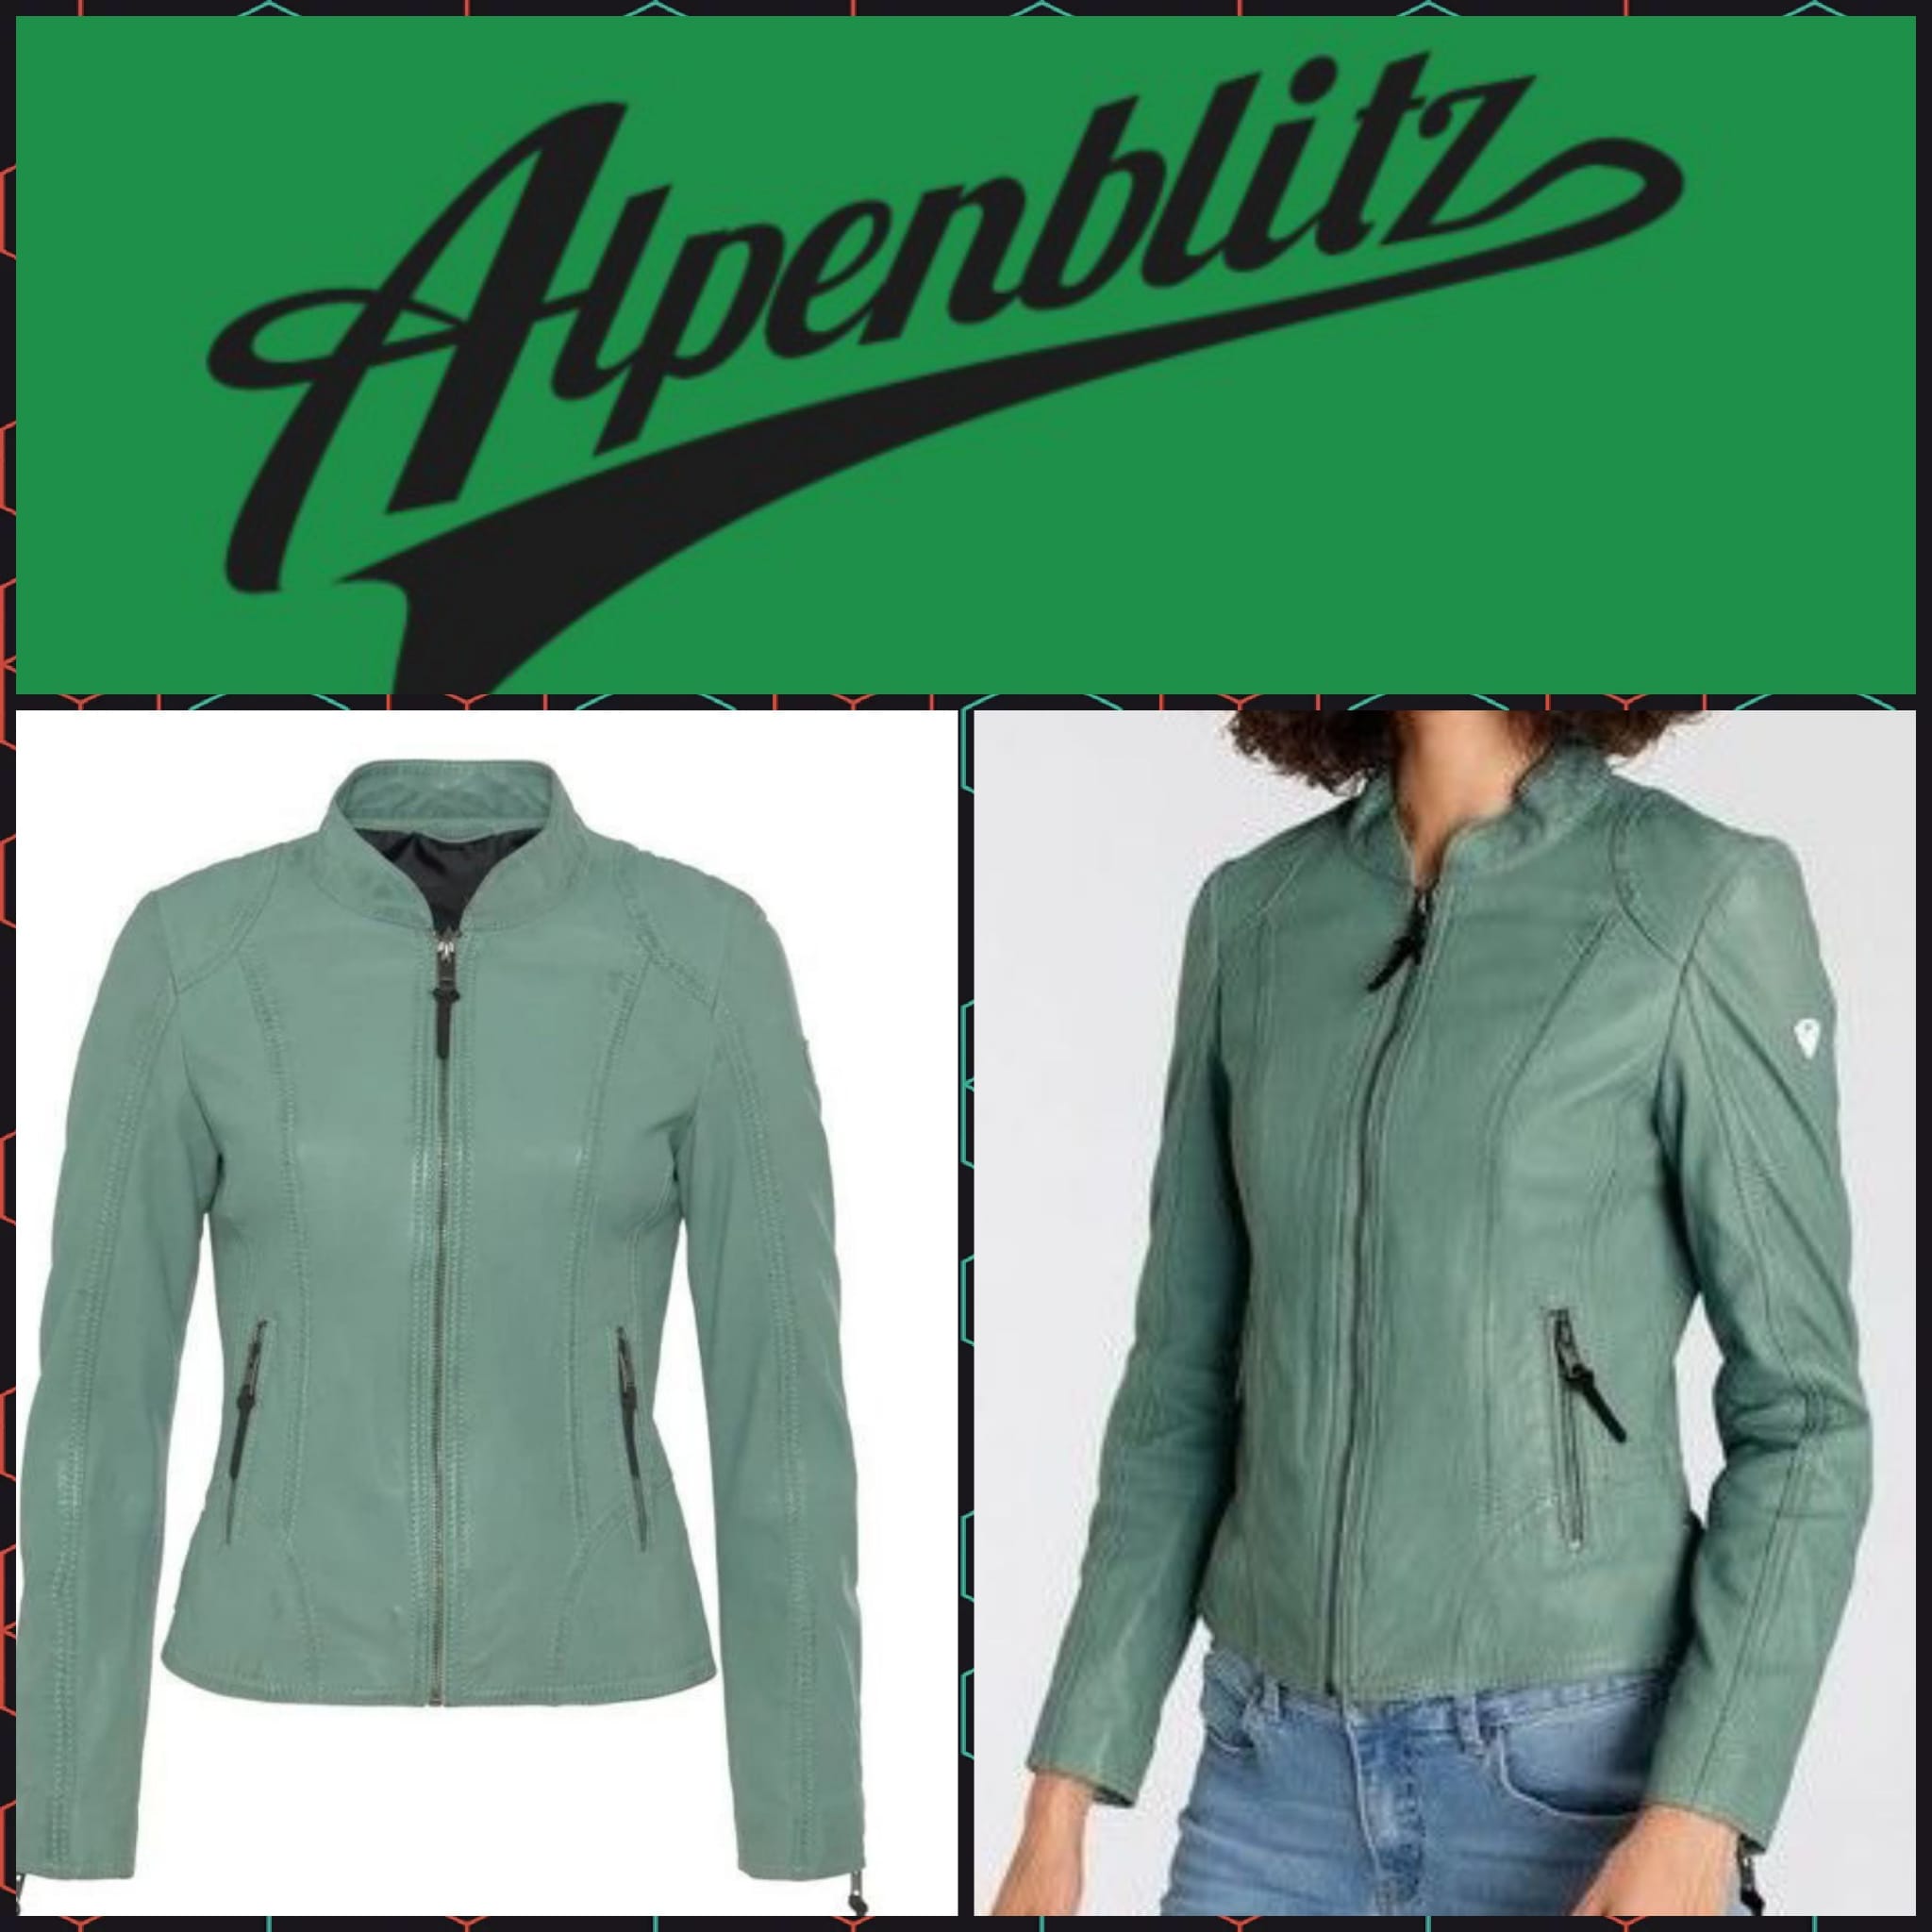 Alpenblitz women's short leather jacket